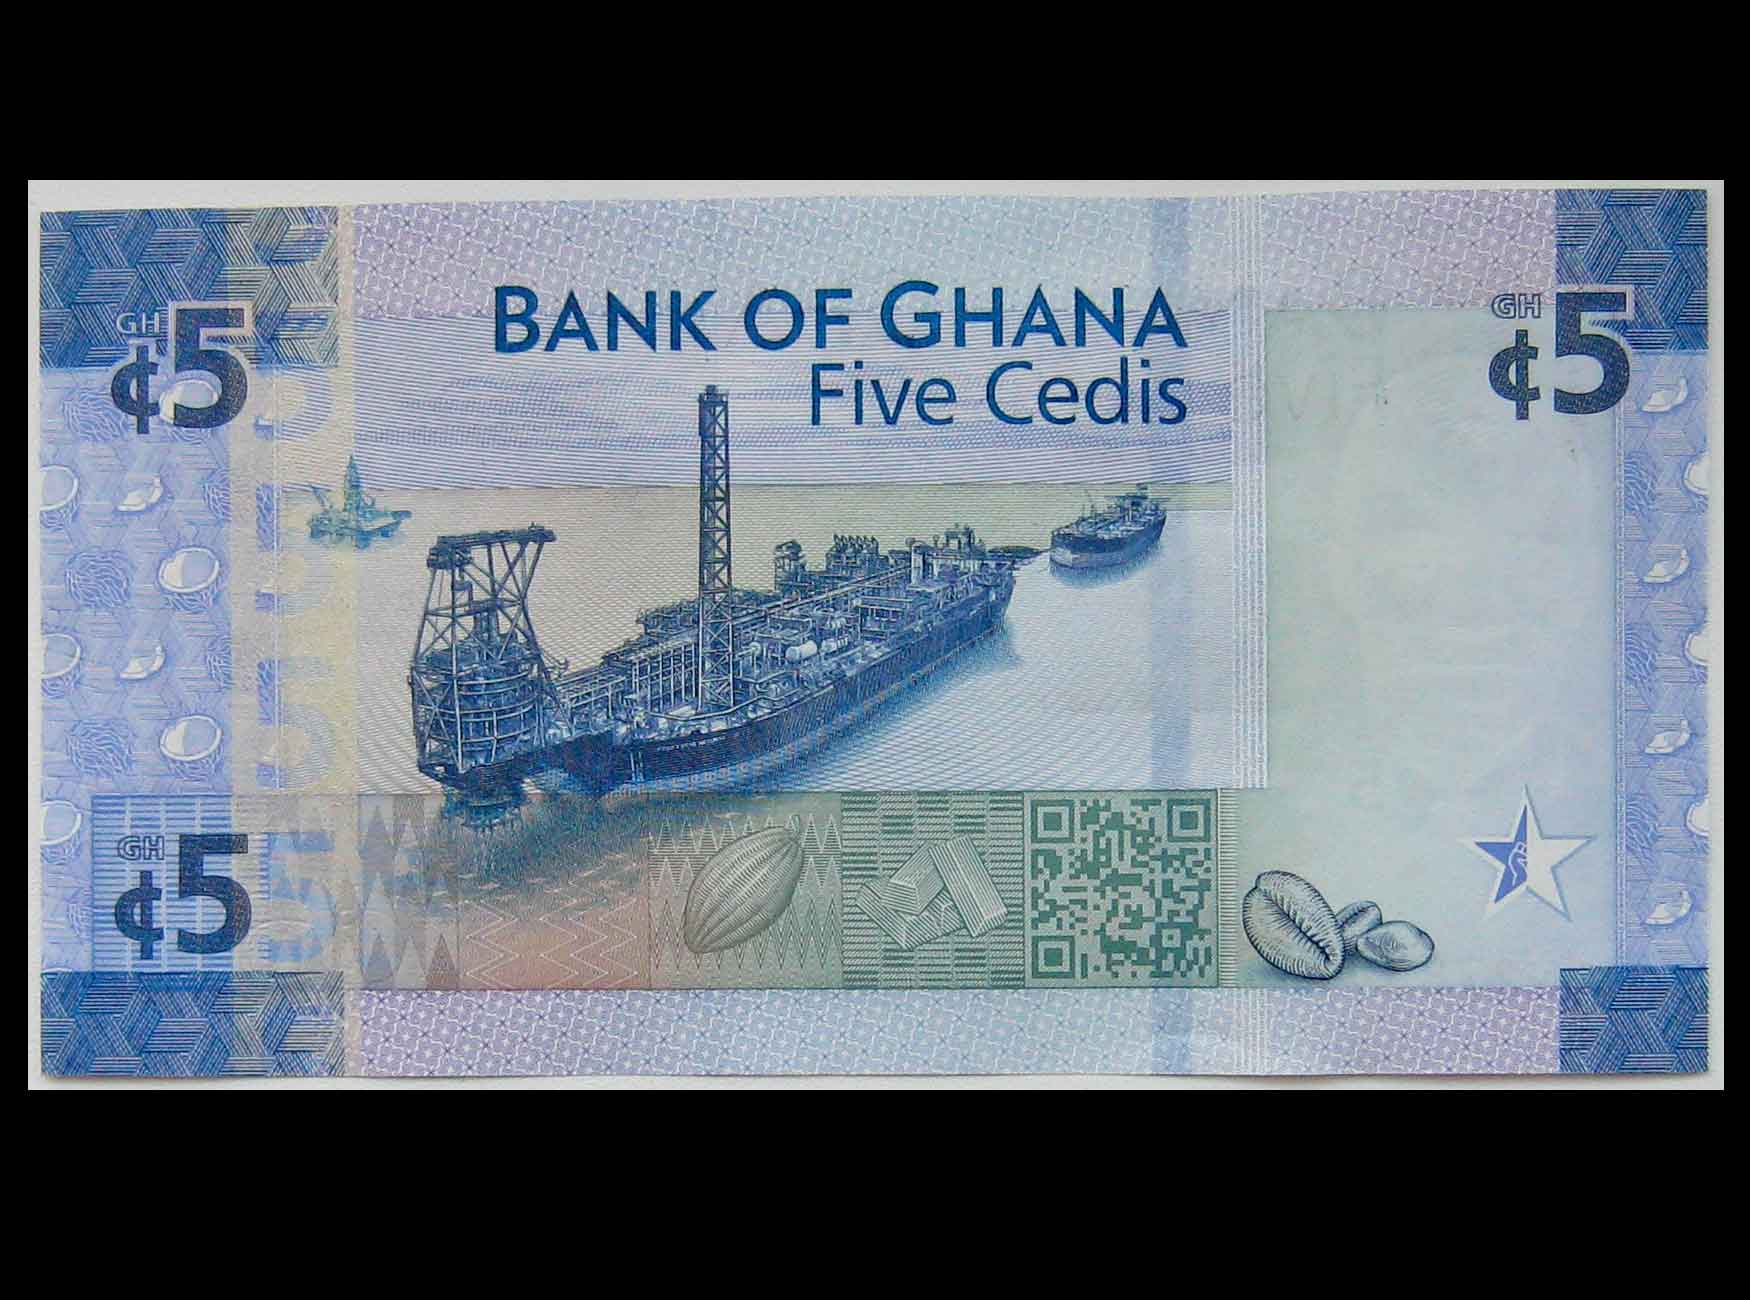 Г ан 5. Ghana Cedi. Банкноты Ганы. Ганский банку. Bank of Ghana.